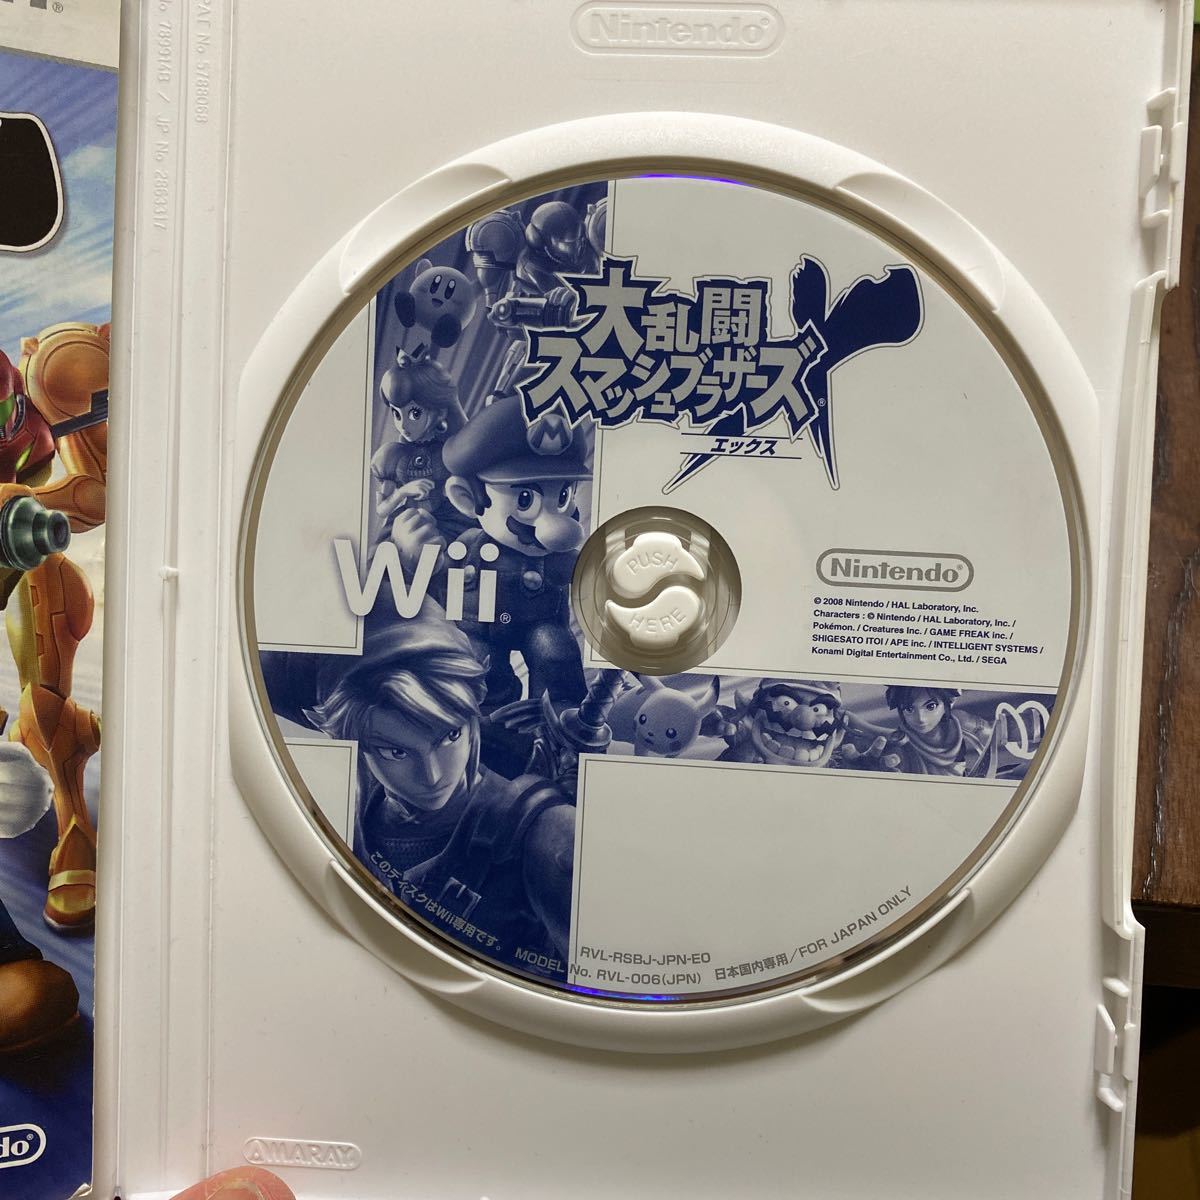 大乱闘スマッシュブラザーズX Wii